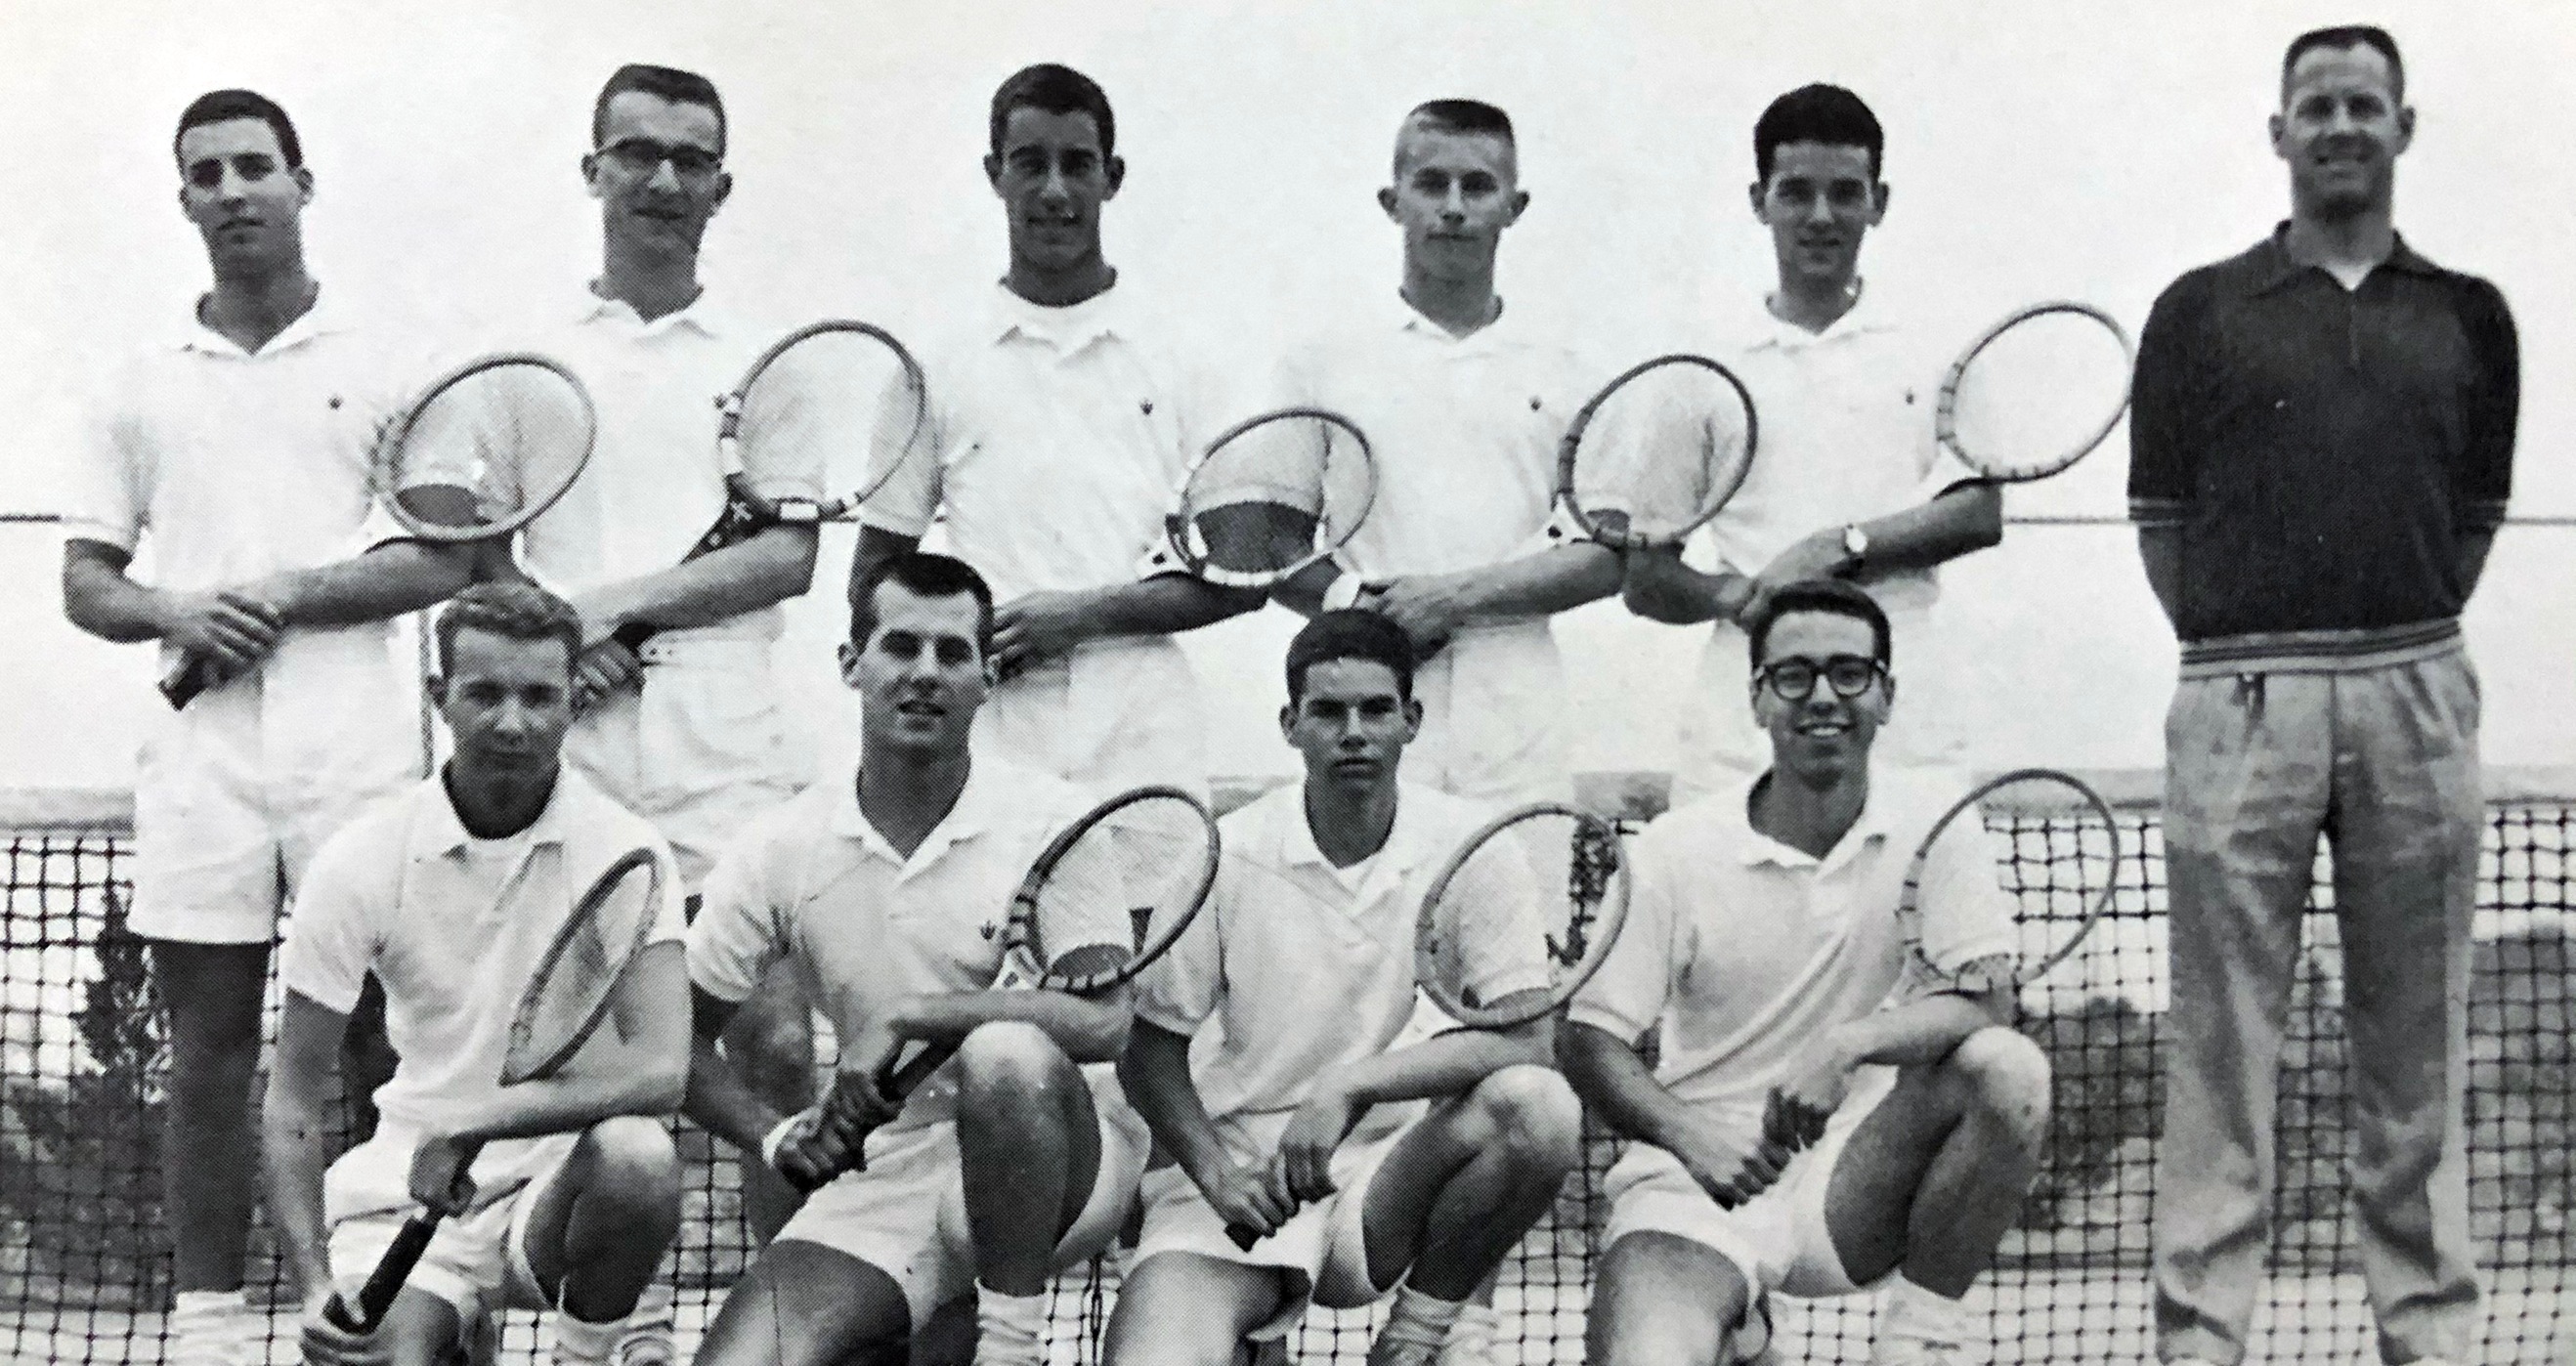 The 1960 men's tennis team